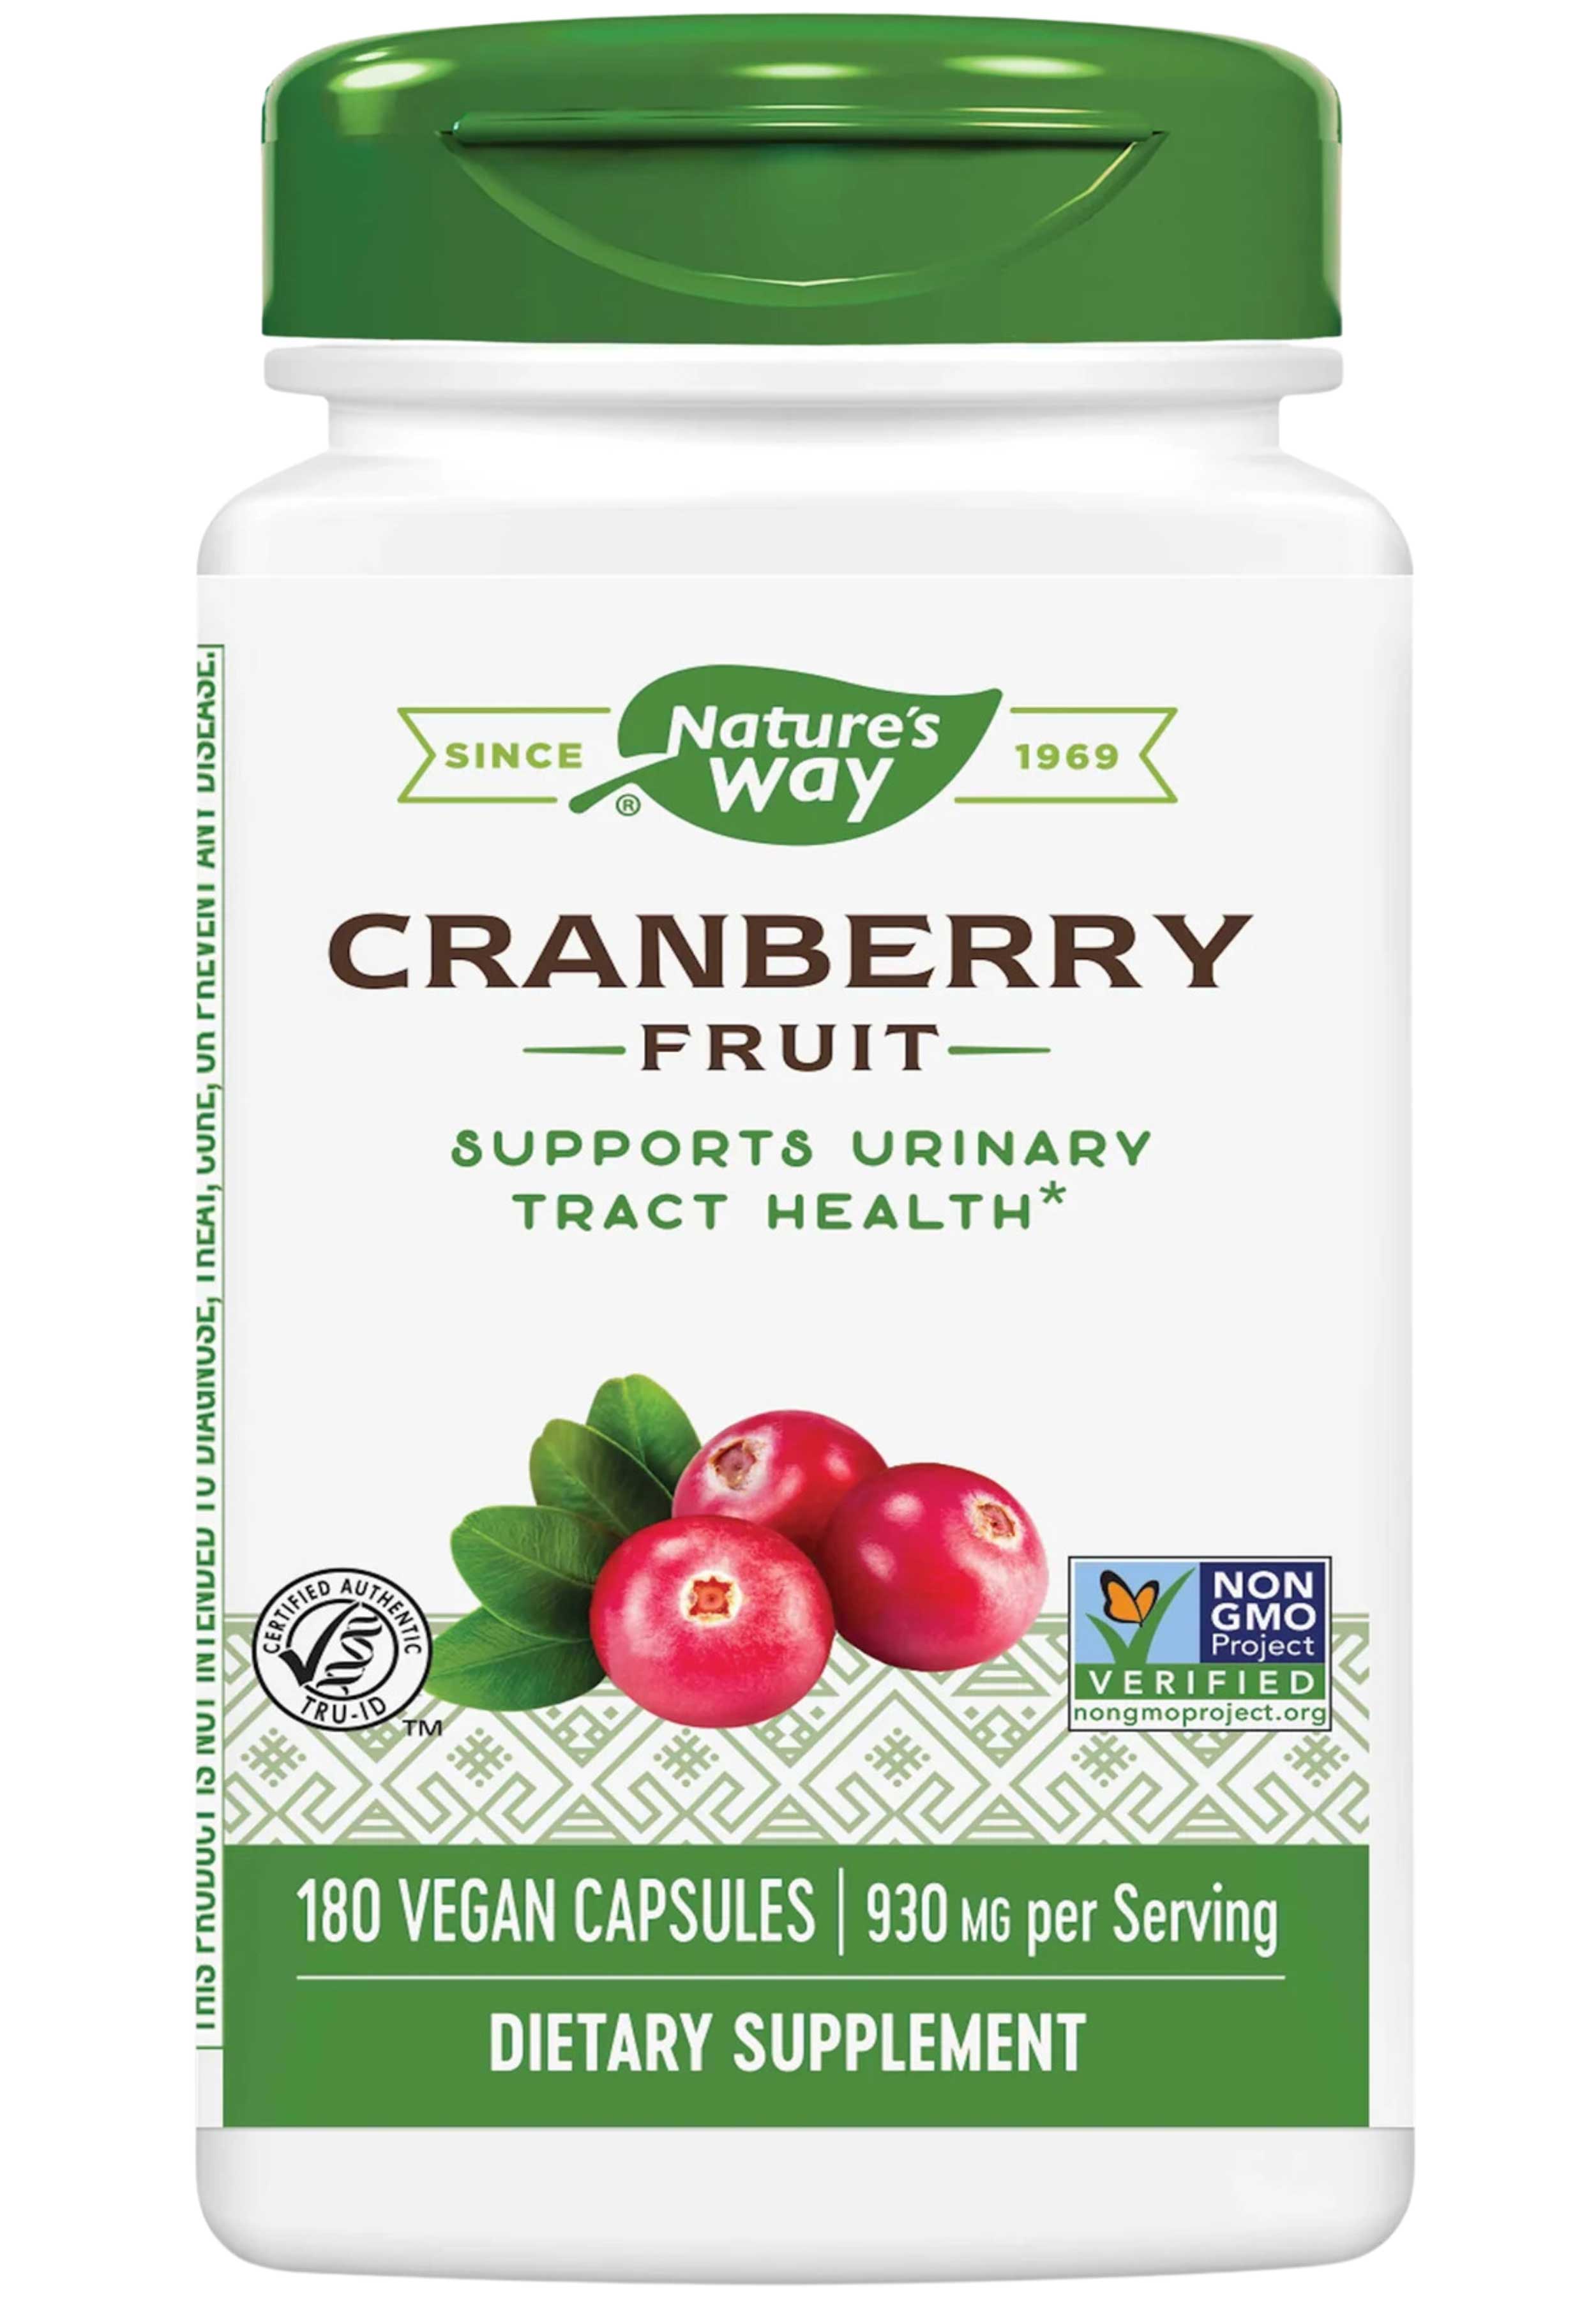 Nature's Way Cranberry Fruit